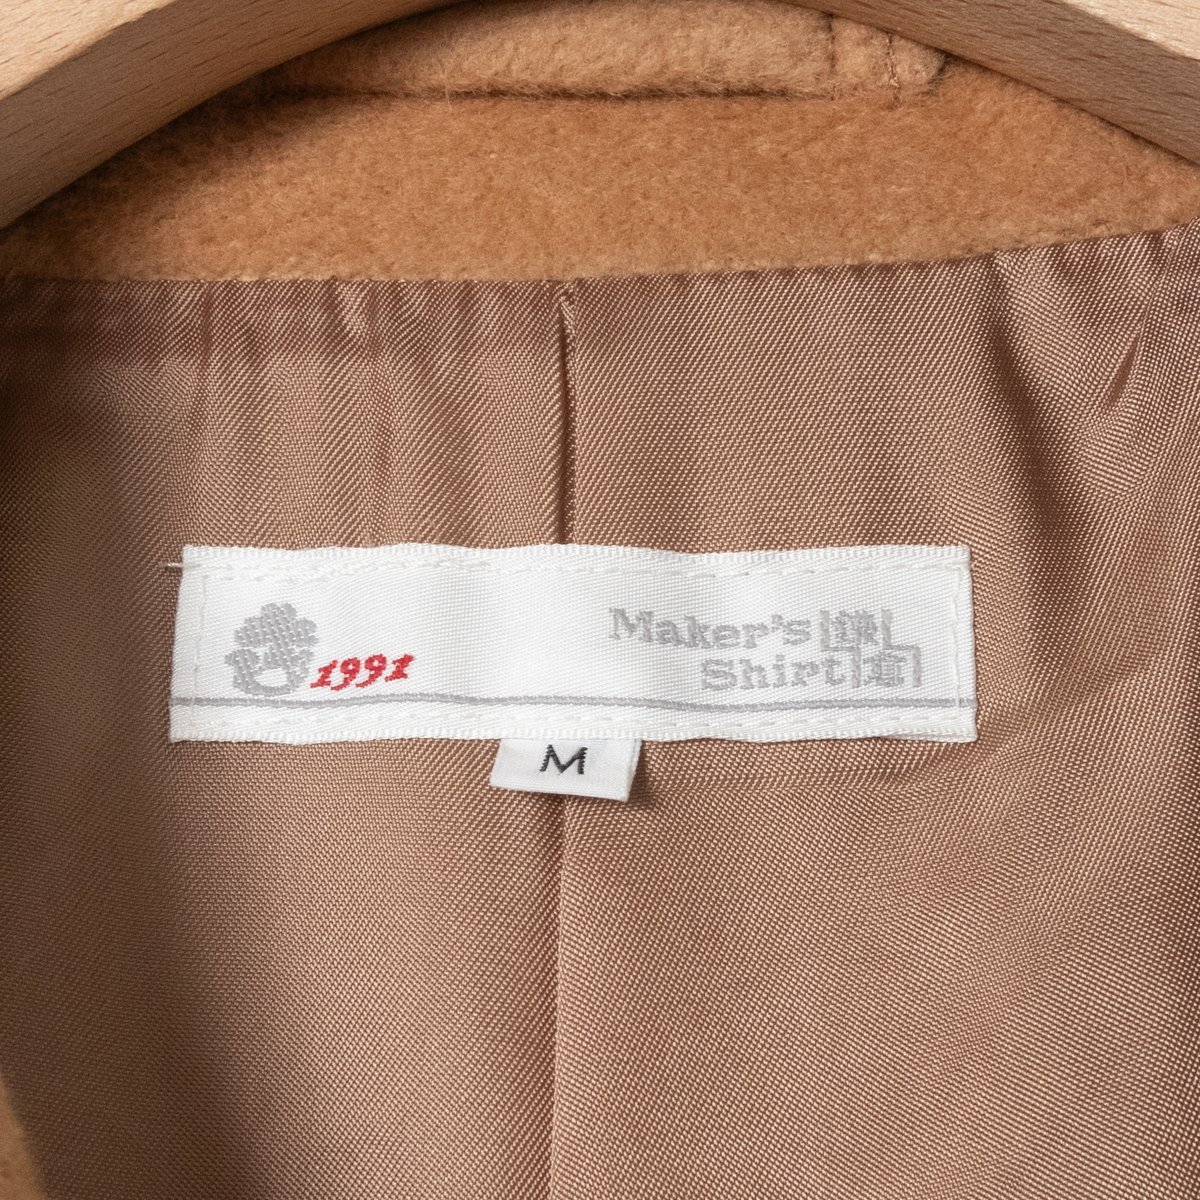 Maker's Shirt 鎌倉シャツ アンゴラウール テーラードカラーコート アウター フェミニン 大人きれいめ 黄土色 キャメル M レディース_画像2